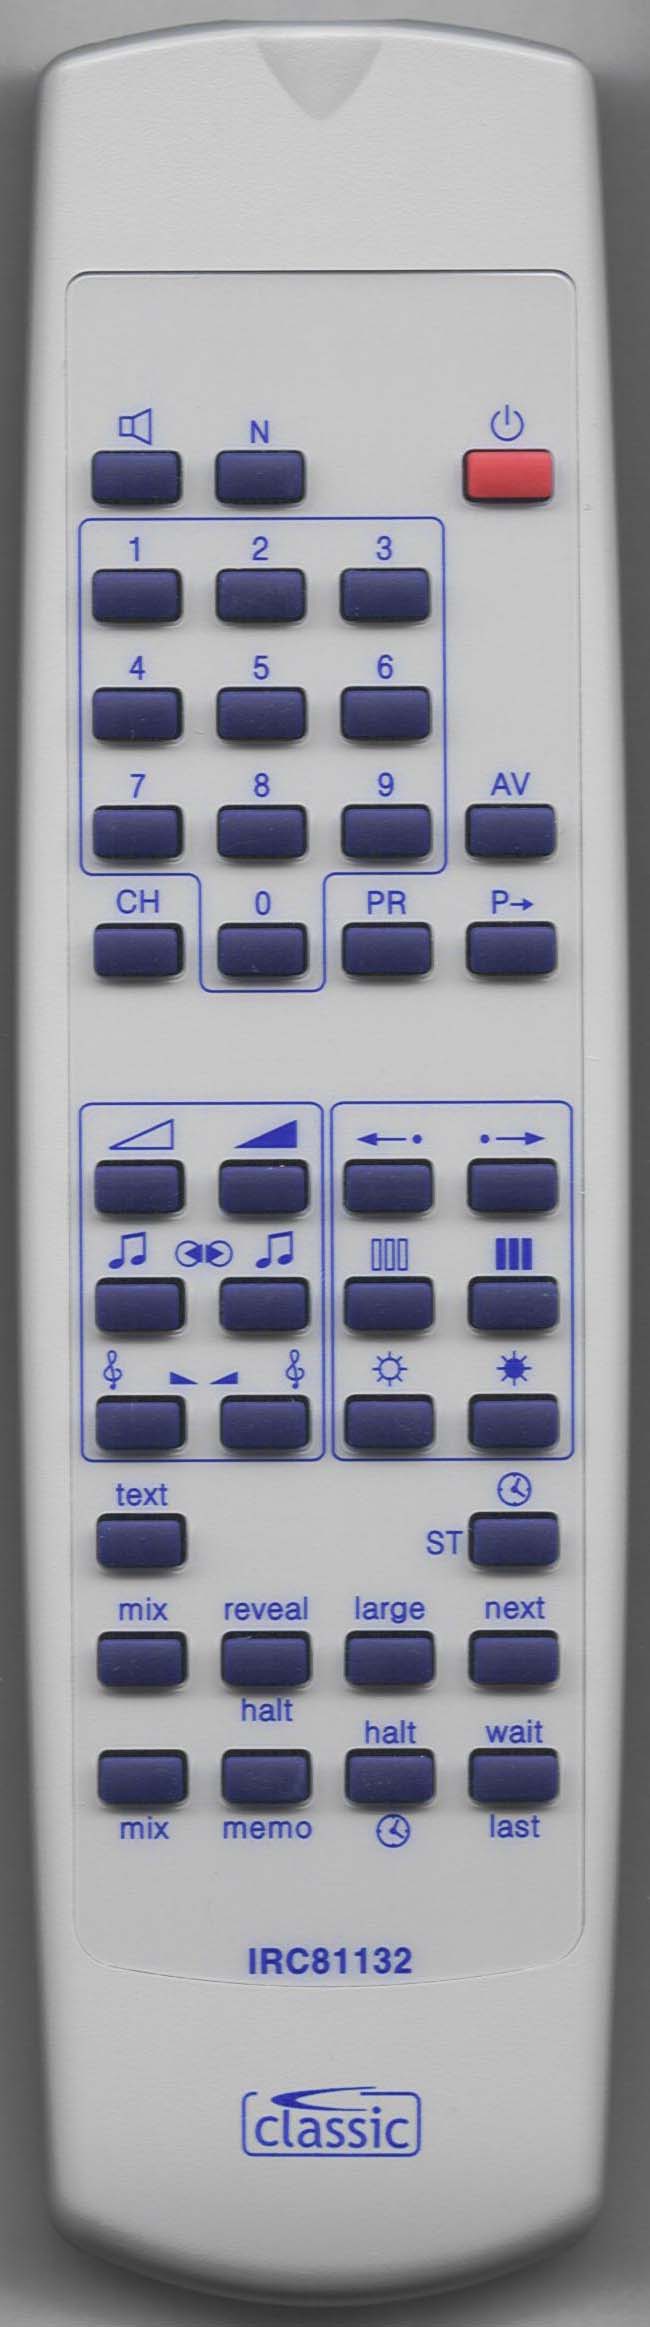 LUXOR 190 9010-18 Remote Control